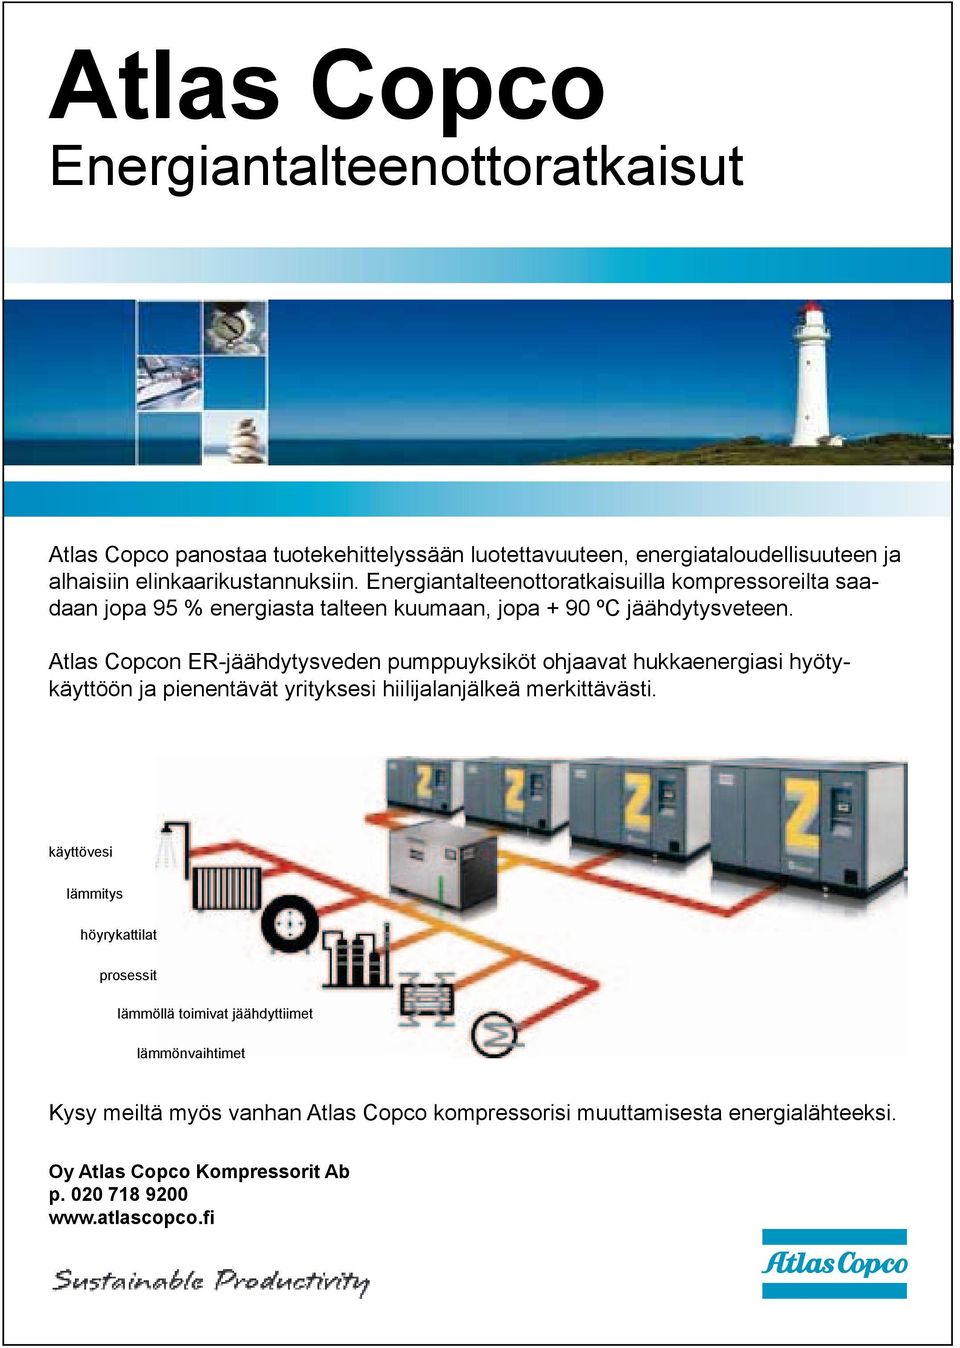 Atlas Copcon ER-jäähdytysveden pumppuyksiköt ohjaavat hukkaenergiasi hyötykäyttöön ja pienentävät yrityksesi hiilijalanjälkeä merkittävästi.